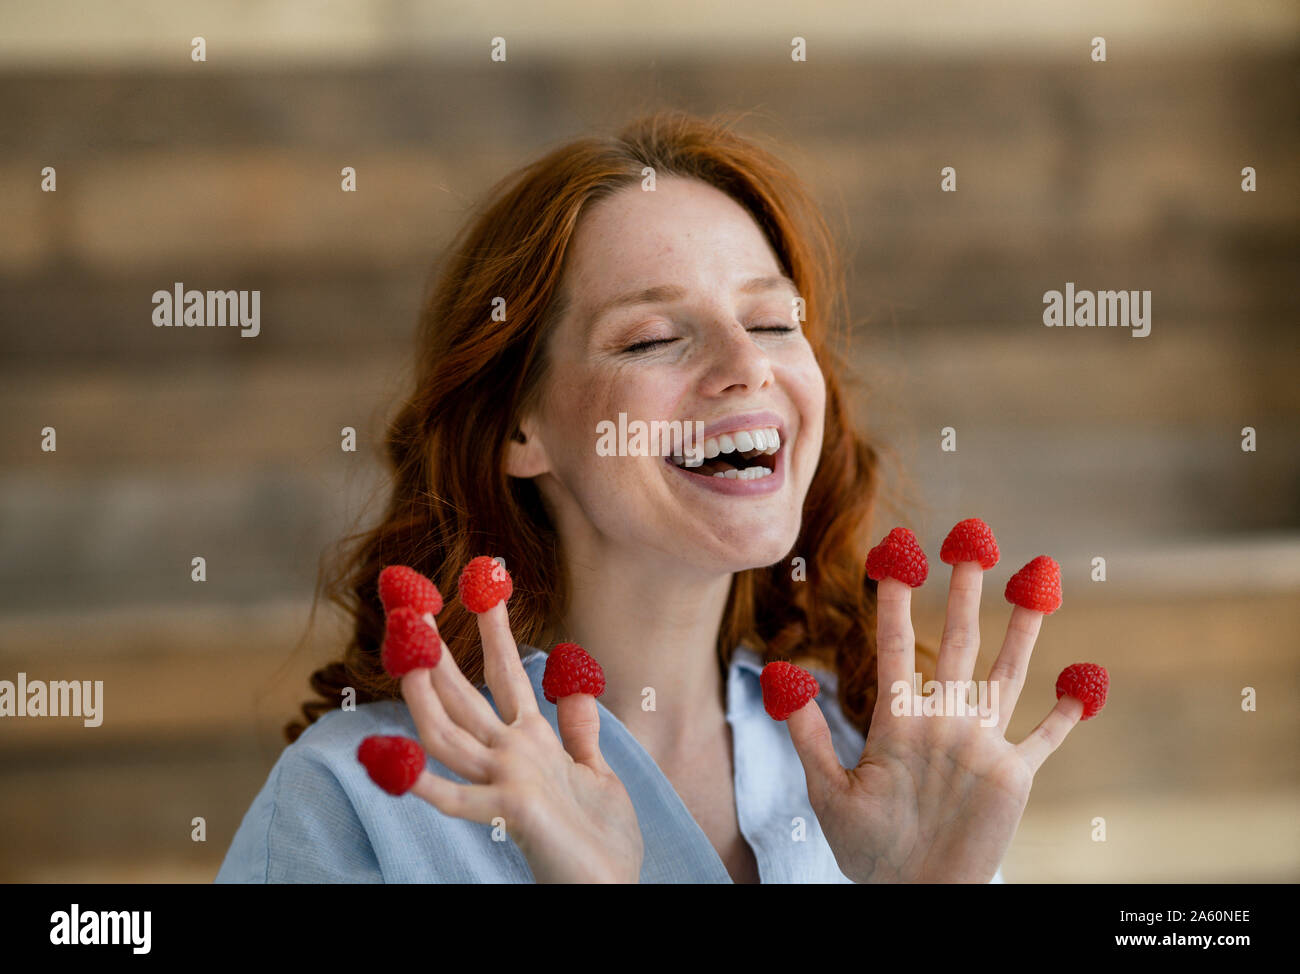 Portrait de femme rousse riant avec framboises sur ses doigts Banque D'Images